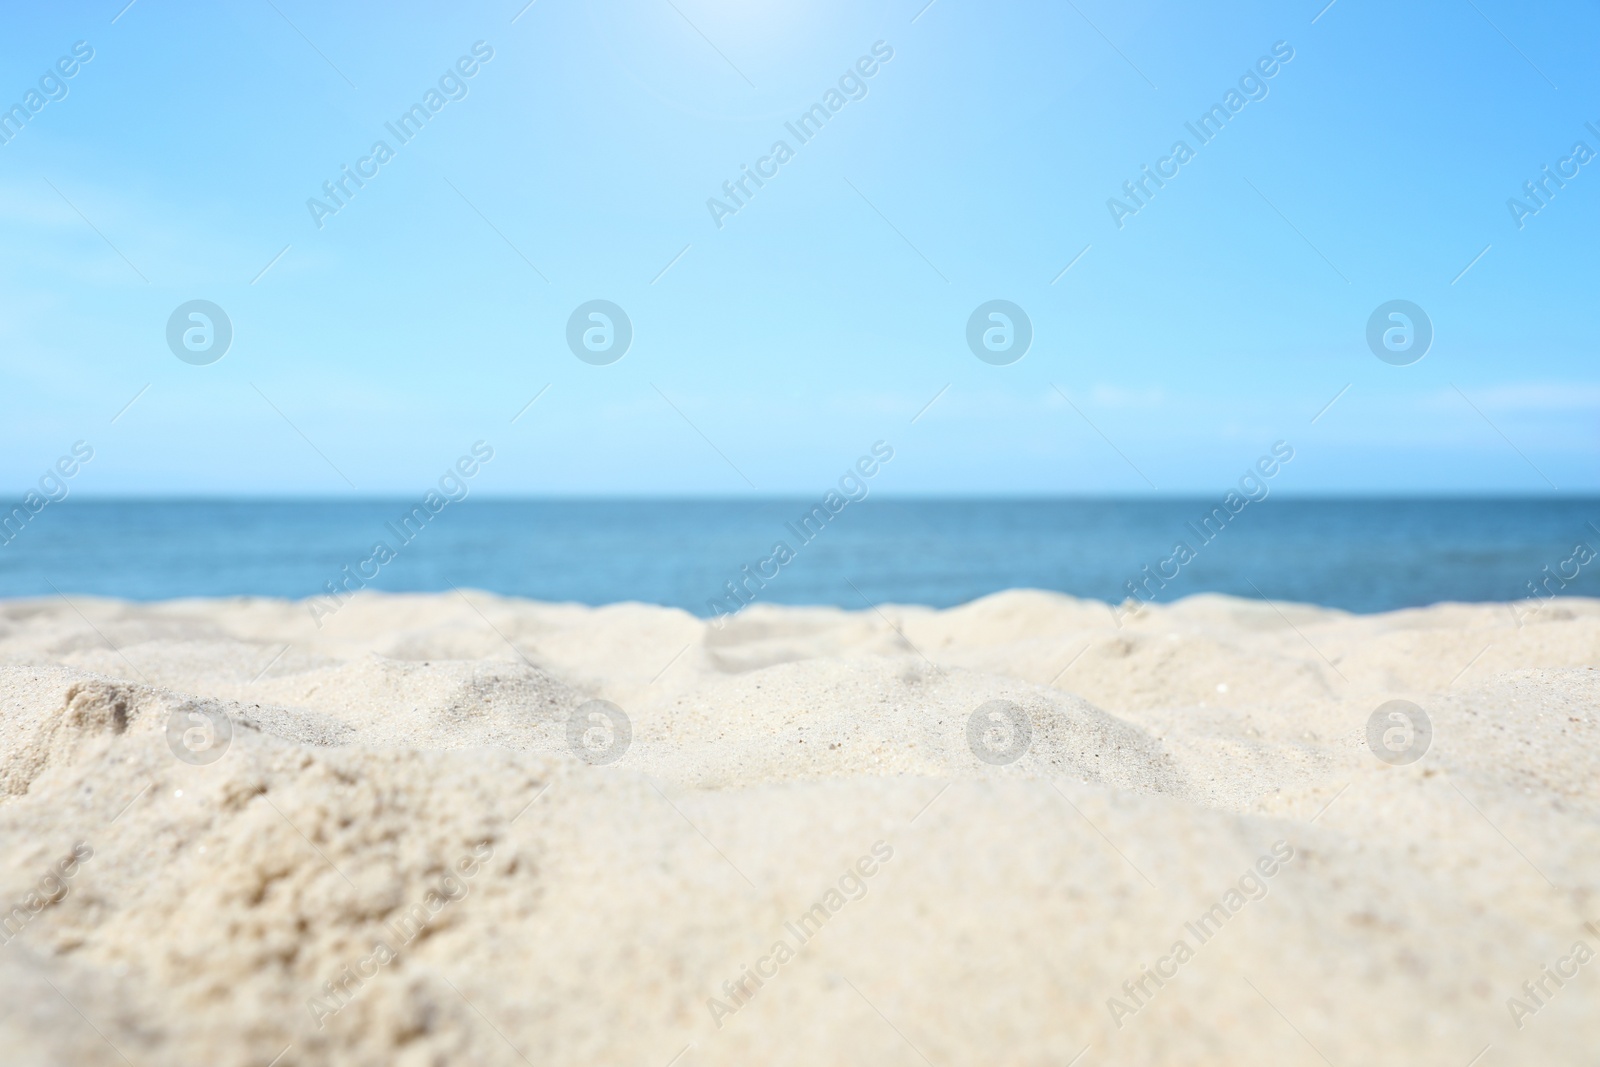 Photo of Sandy beach near sea on sunny day